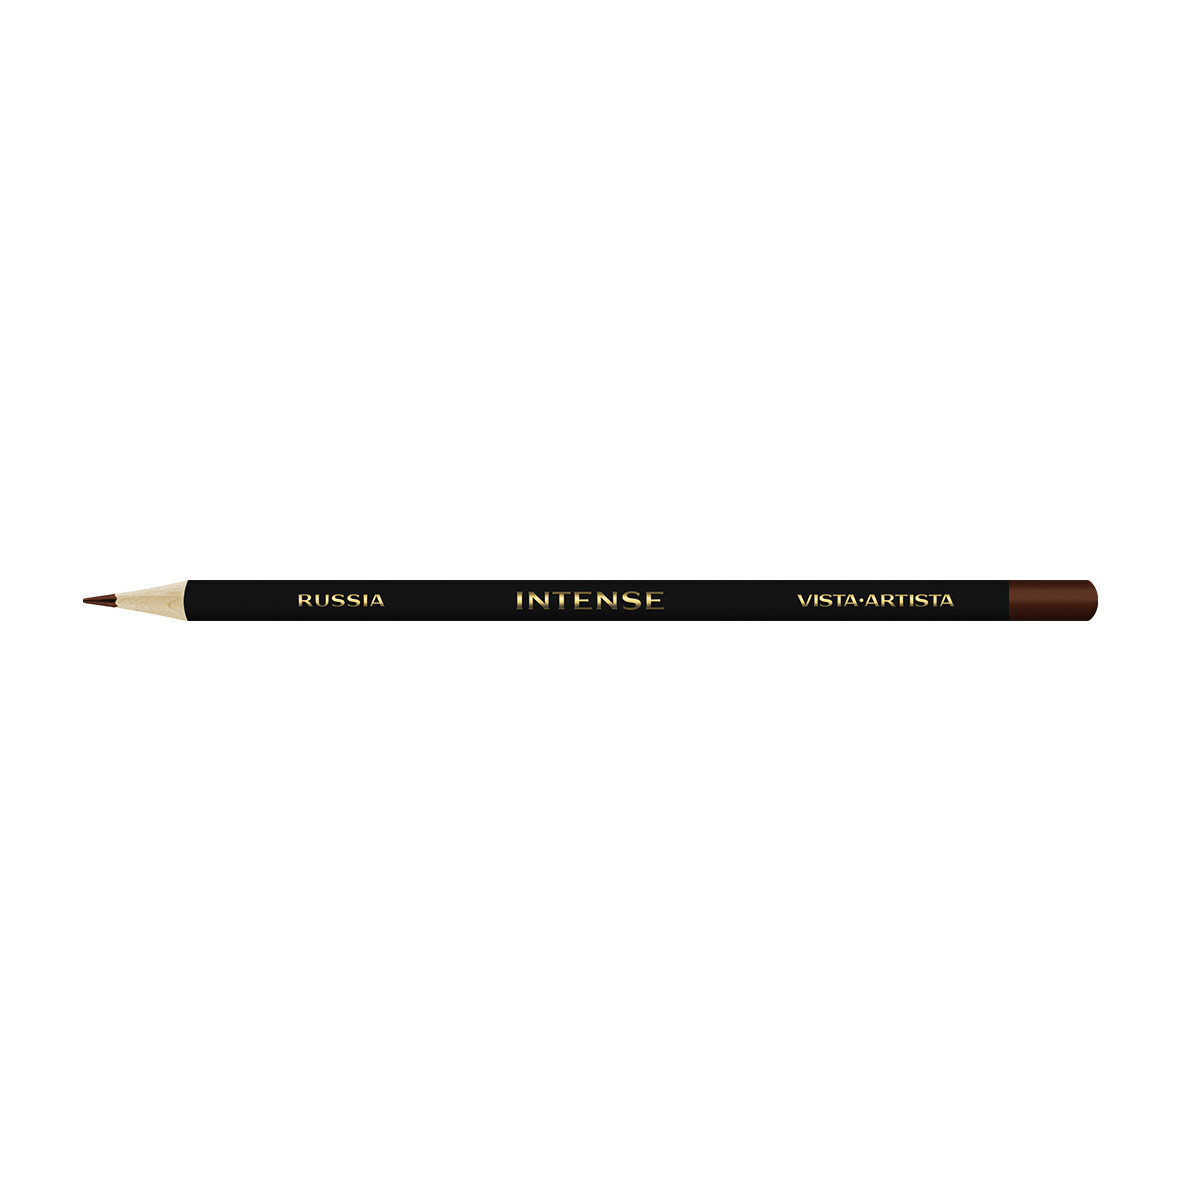 VISTA-ARTISTA' 'INTENSE' VICP Карандаш цветной заточенный цвет 701 коричневый